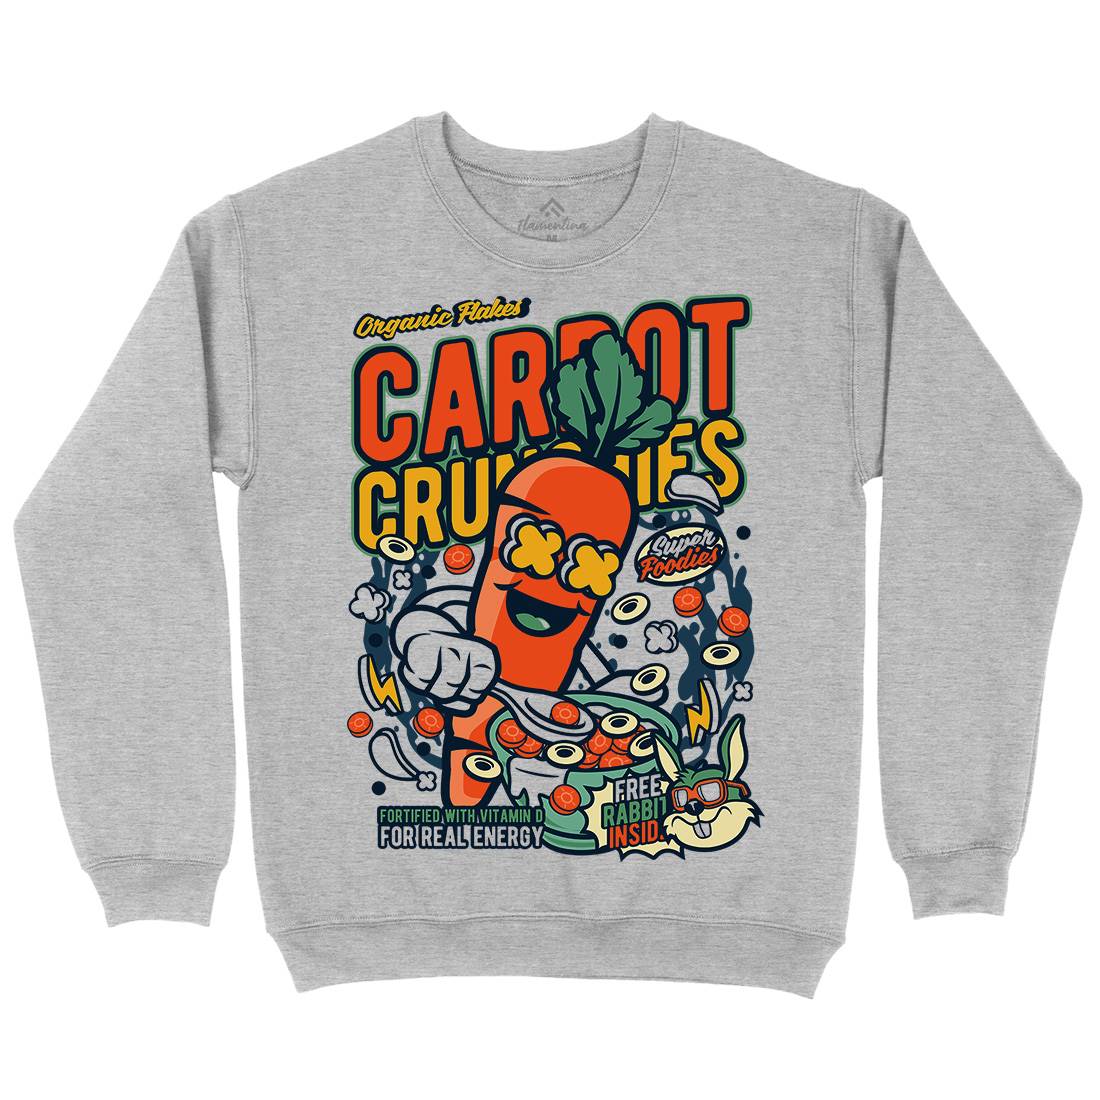 Carrot Crunchies Kids Crew Neck Sweatshirt Food C509